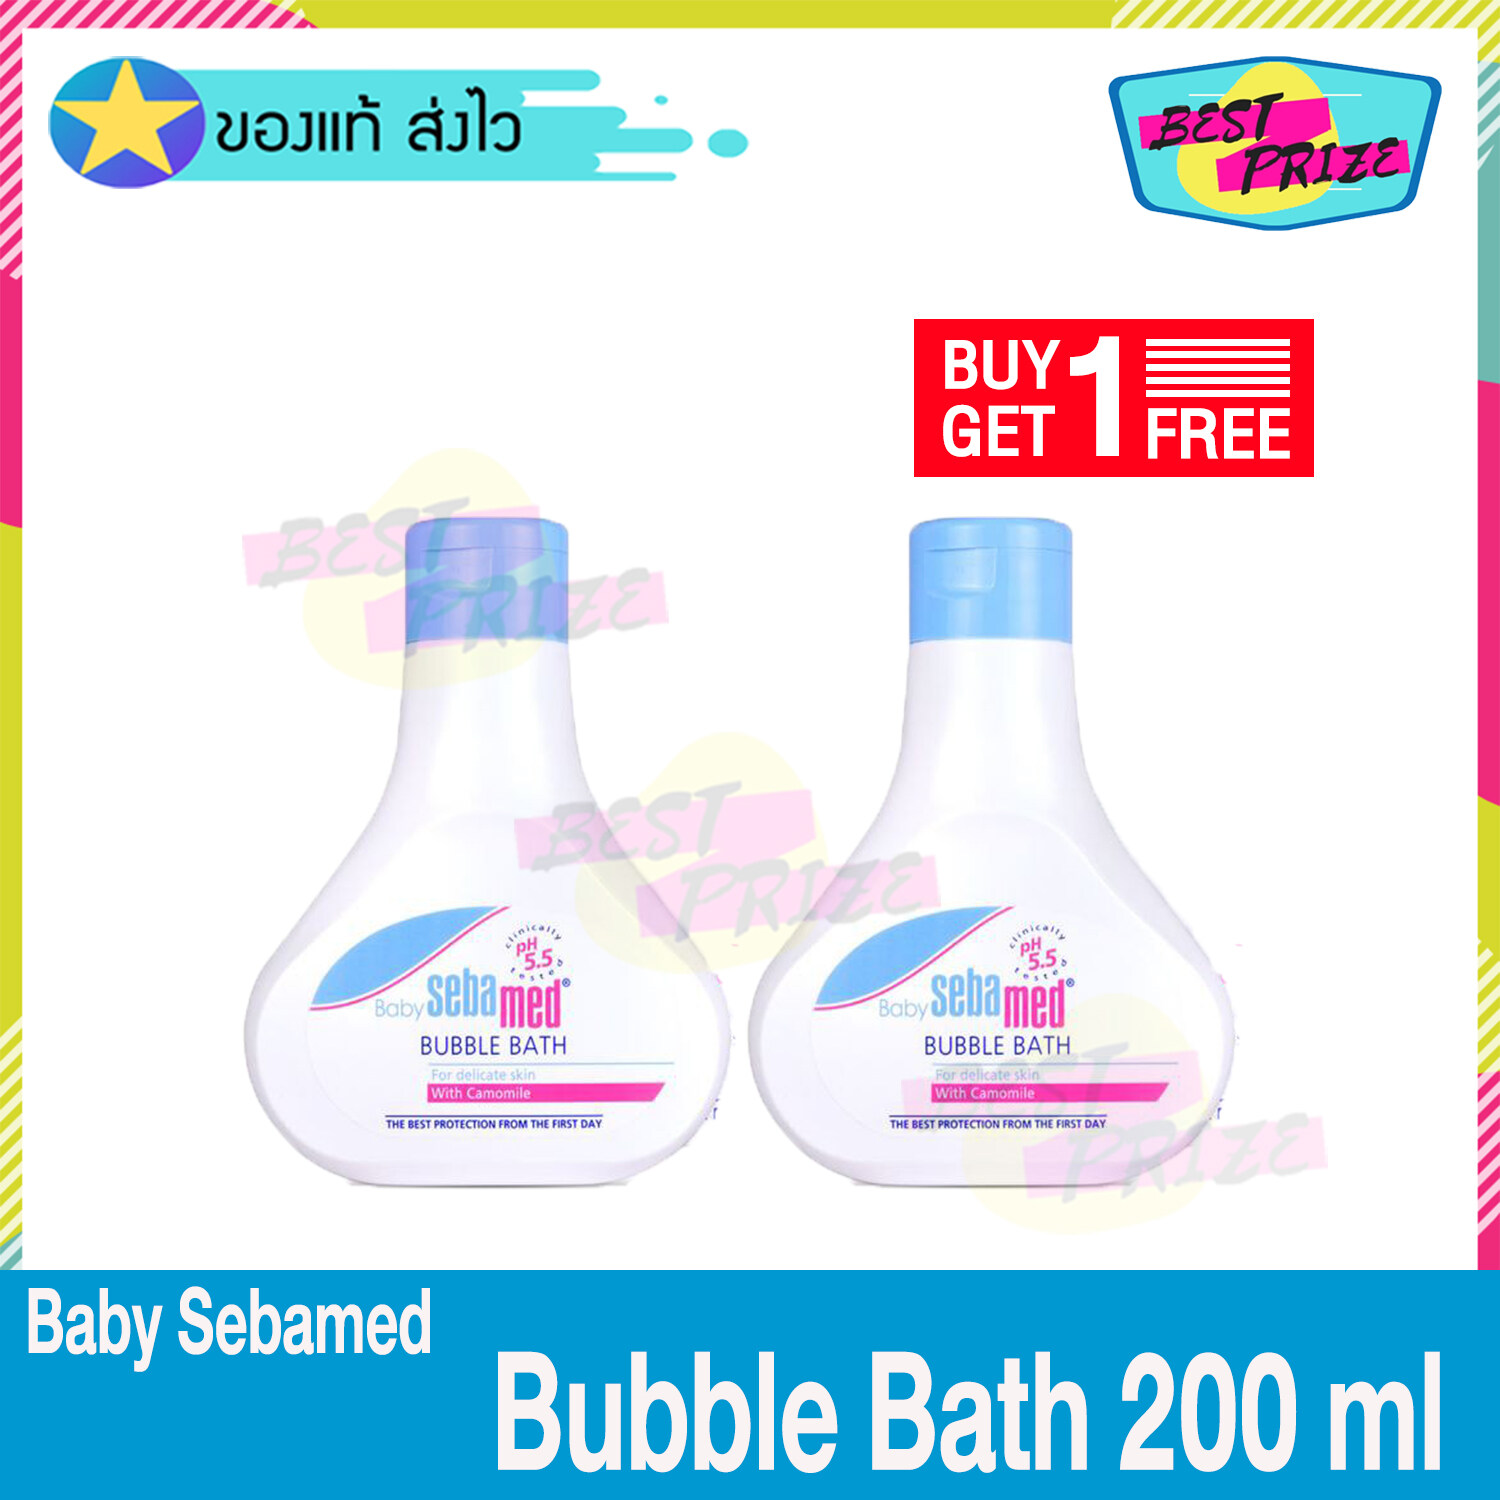 (ซื้อ 1 แถม 1) Sebamed Baby Bubble Bath 200 ml เบบี้ ซีบาเมด บับเบิ้ล บาธ ครีมอาบน้ำเด็ก สำหรับผิวบอบบาง ผิวแพ้ง่าย ใช้ได้ตั้งแต่เด็กแรกเกิด